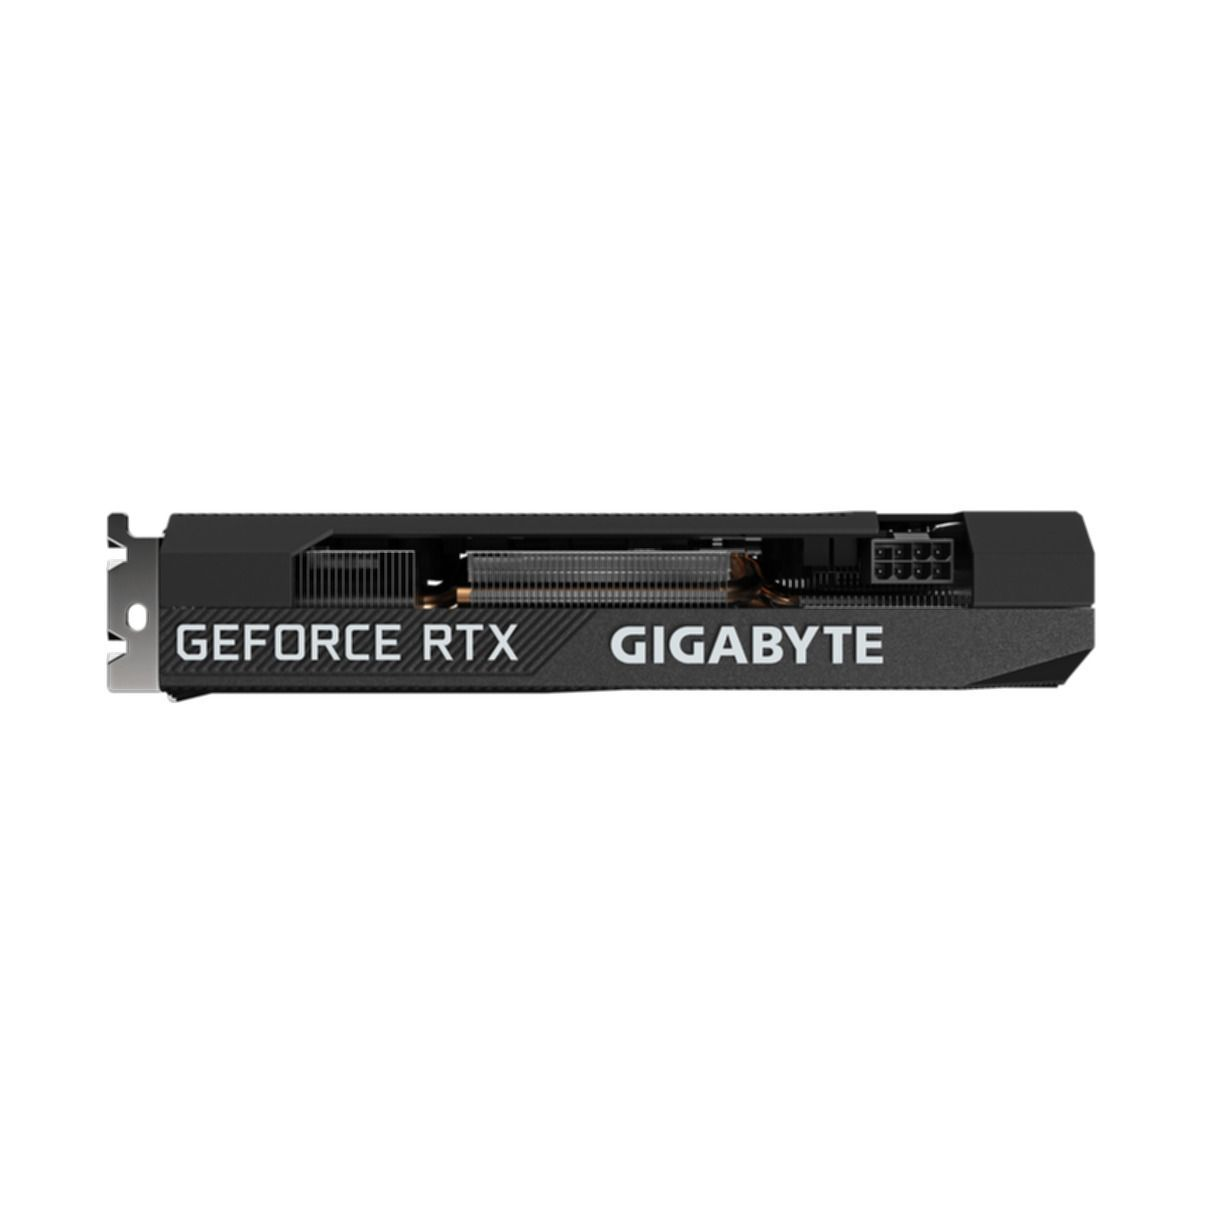 Grafikkarte) OC GIGABYTE RTX 12G (NVIDIA, 3060 GeForce 2.0) (rev. WINDFORCE